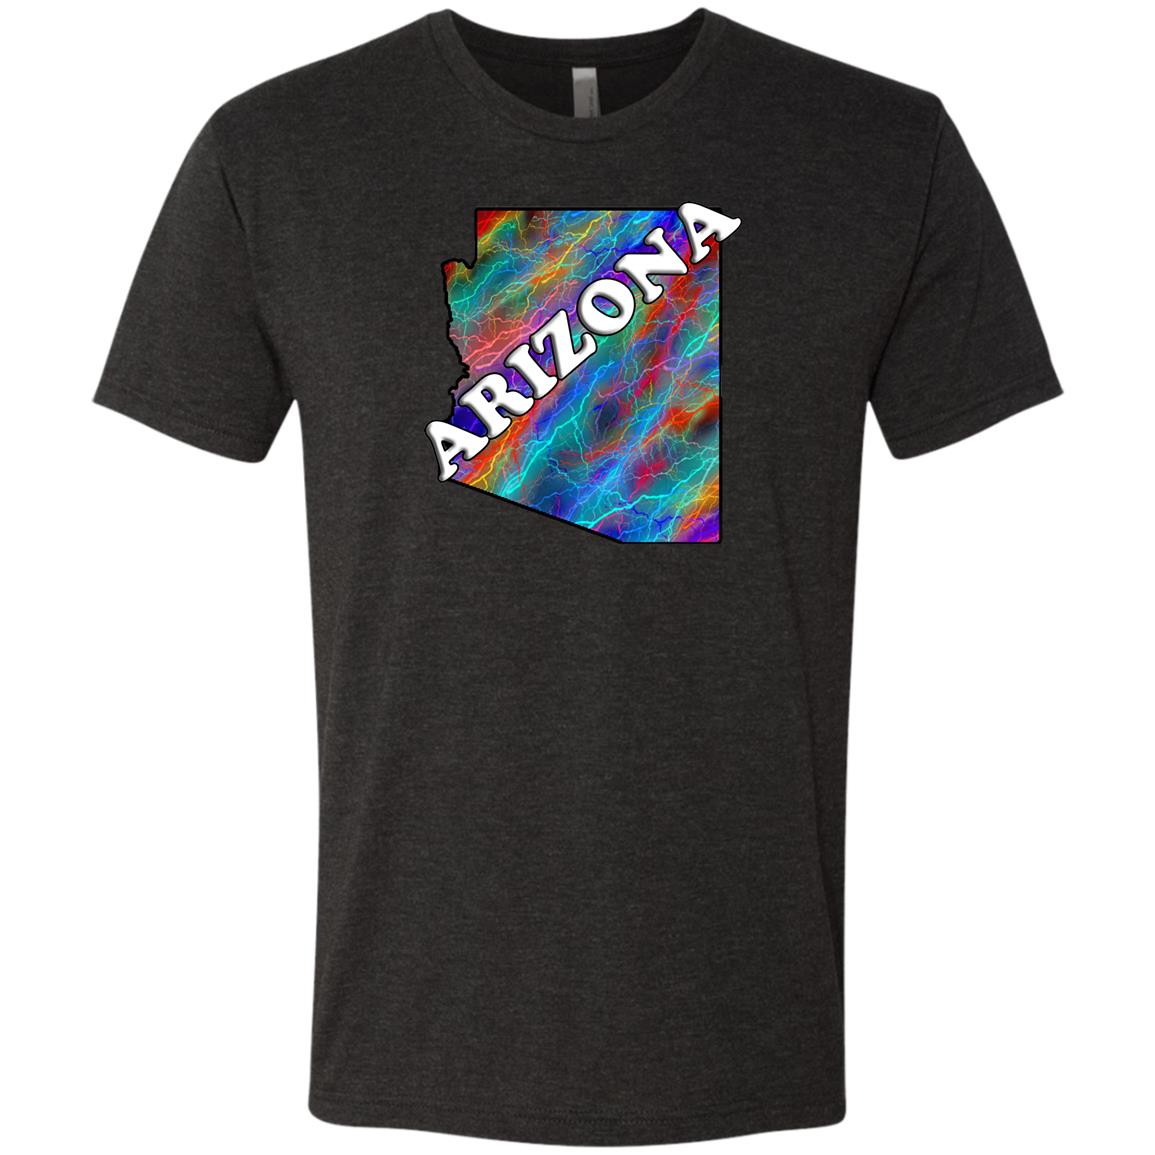 Arizona State T-Shirt